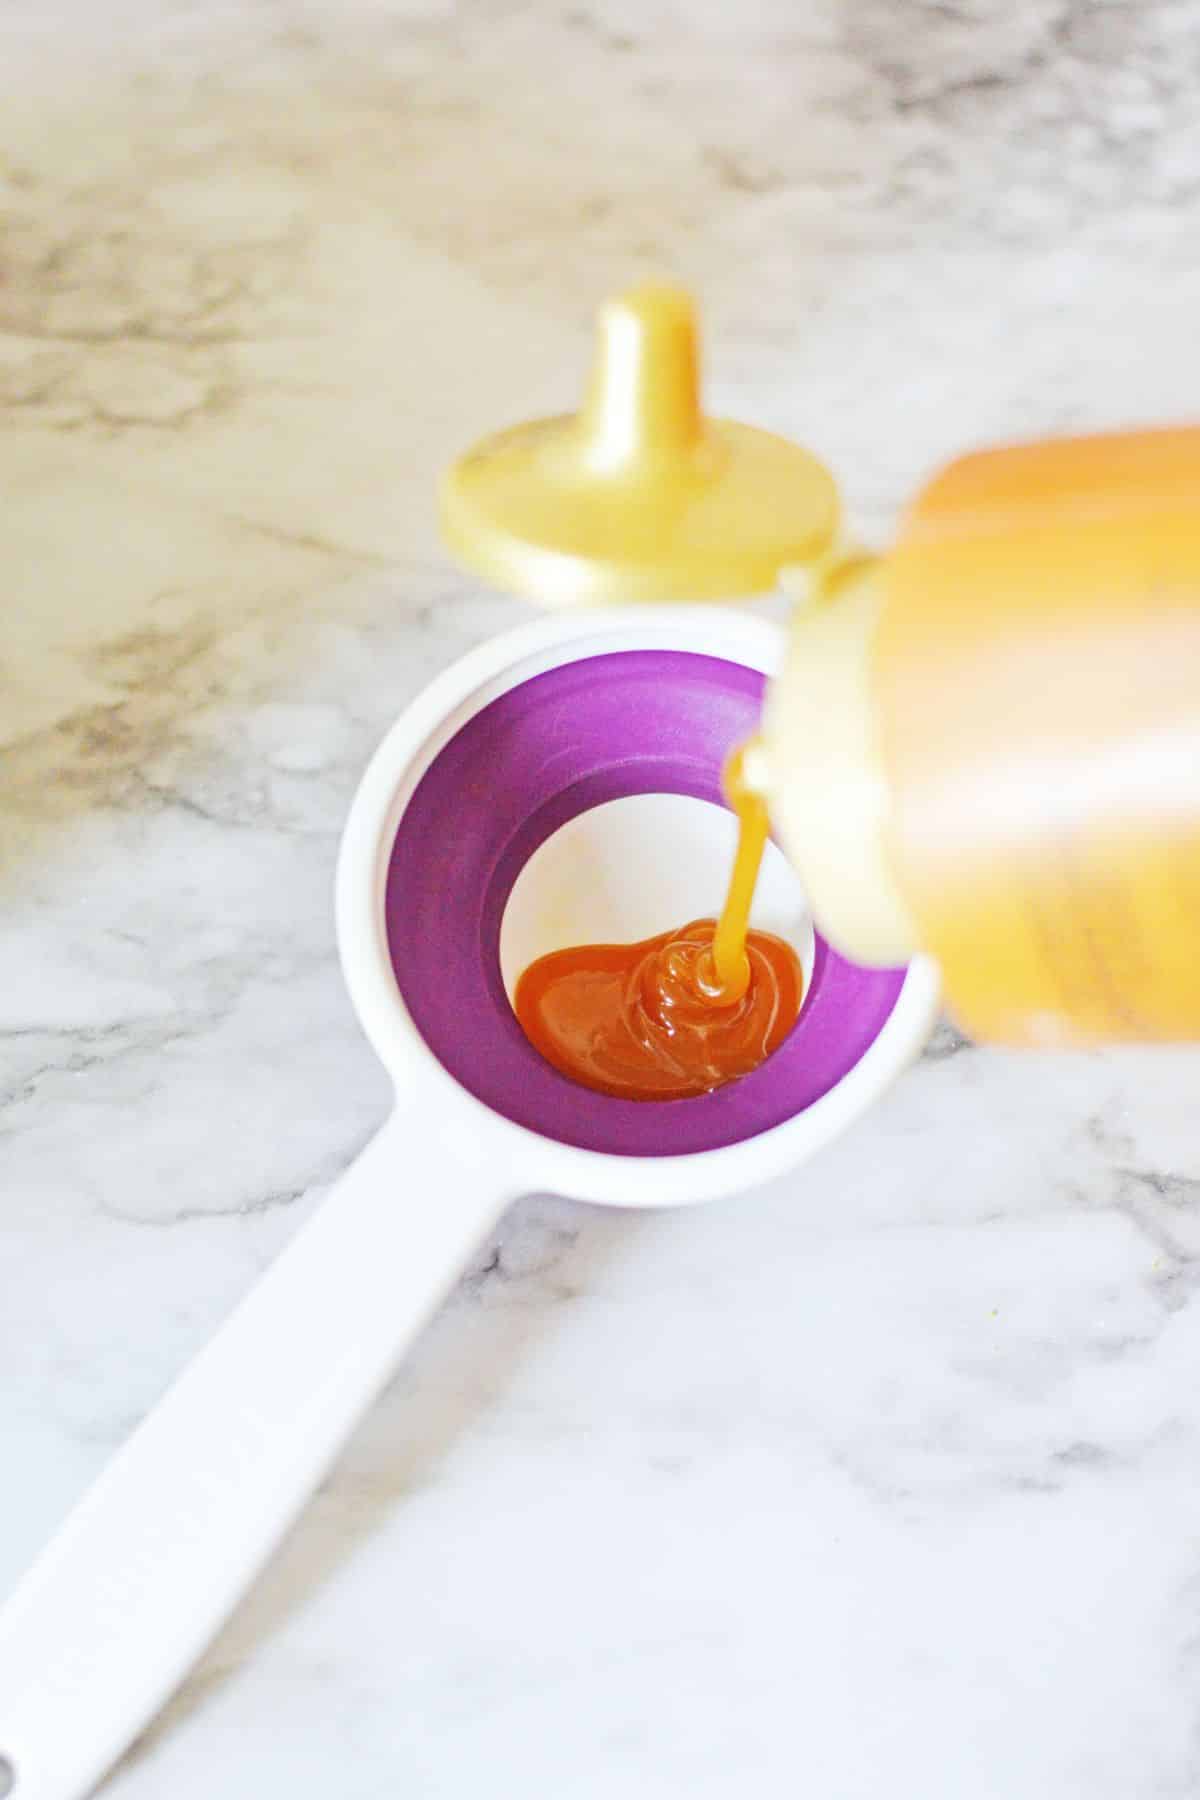 pour caramel into measuring spoon